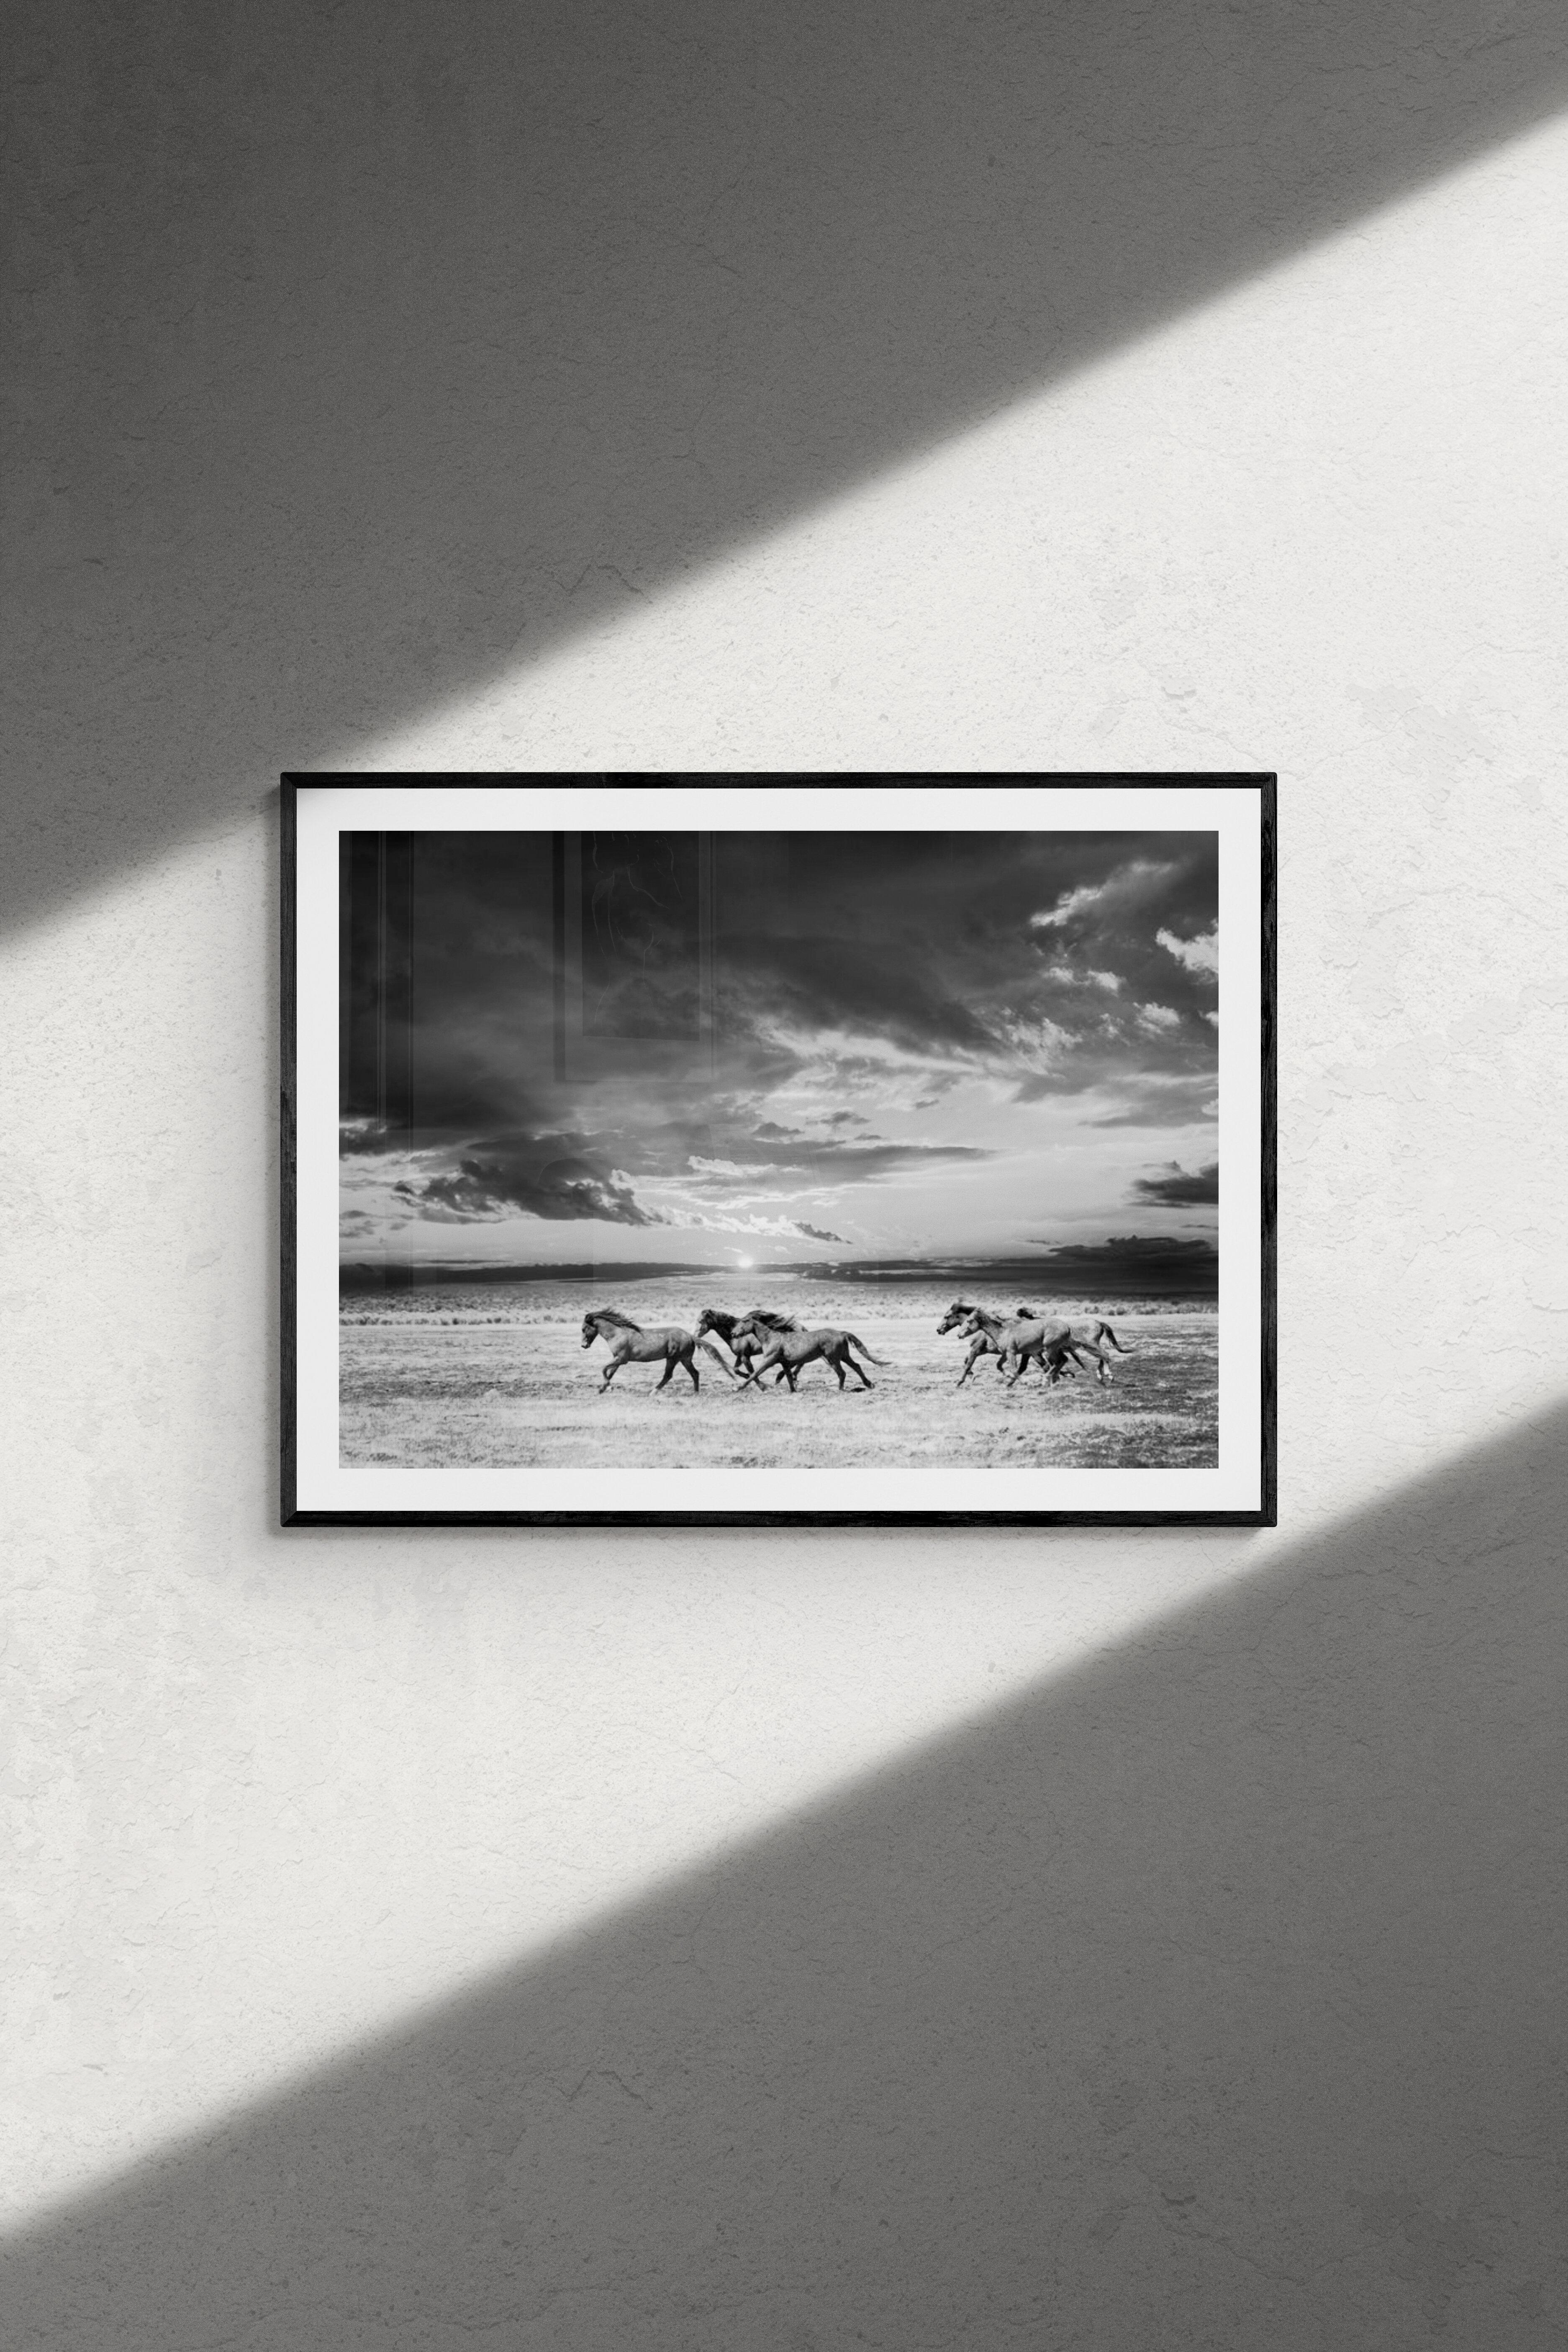 Chasing the Light – 28x40 Schwarz-Weiß-Fotografie mit Wildpferden, Senf, signiert – Print von Shane Russeck